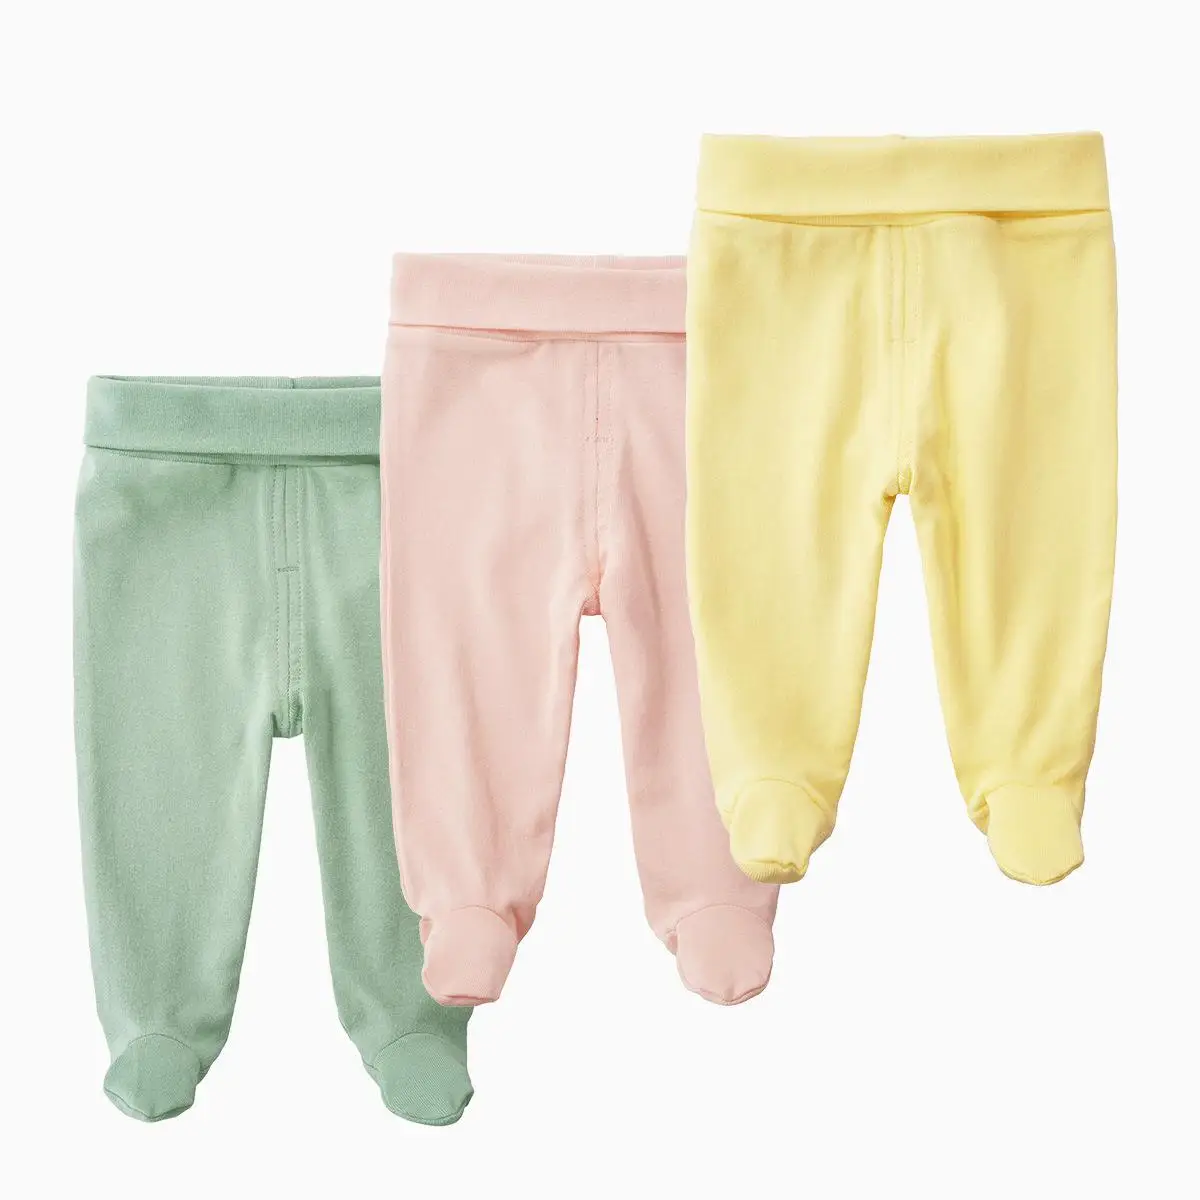 Children's Pants | Baby Boys Pants | Cotton Trousers | Boy Pants Kids |  Cotton Pants - 1-9y - Aliexpress